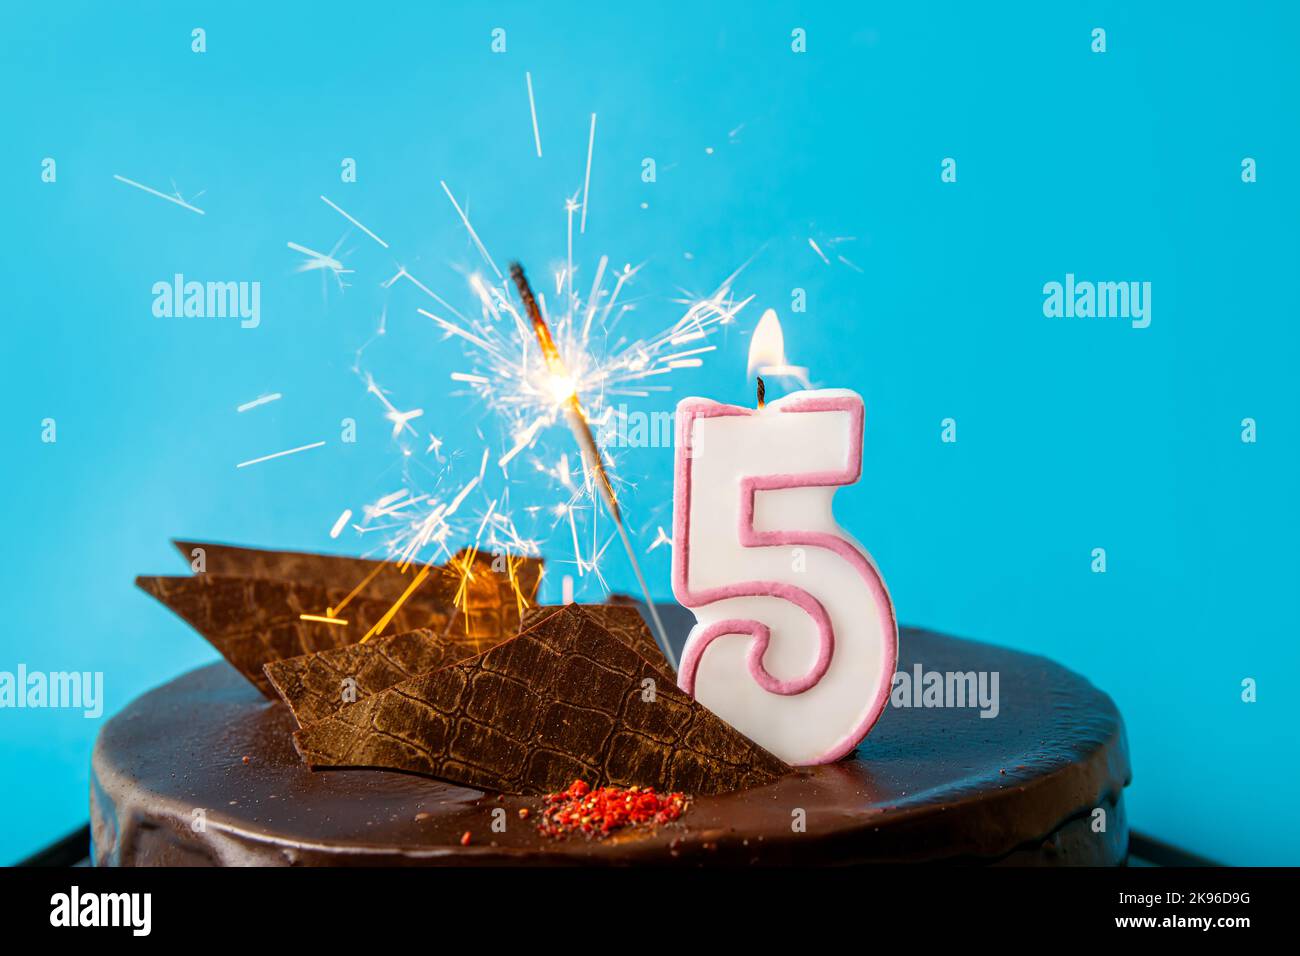 Nummer 5 Geburtstagskerze brennt und funkelt mit Funken auf Kuchen. Das Konzept der Feier zum fünften Geburtstag oder Jubiläum. Viel Kopierspeicher. Stockfoto